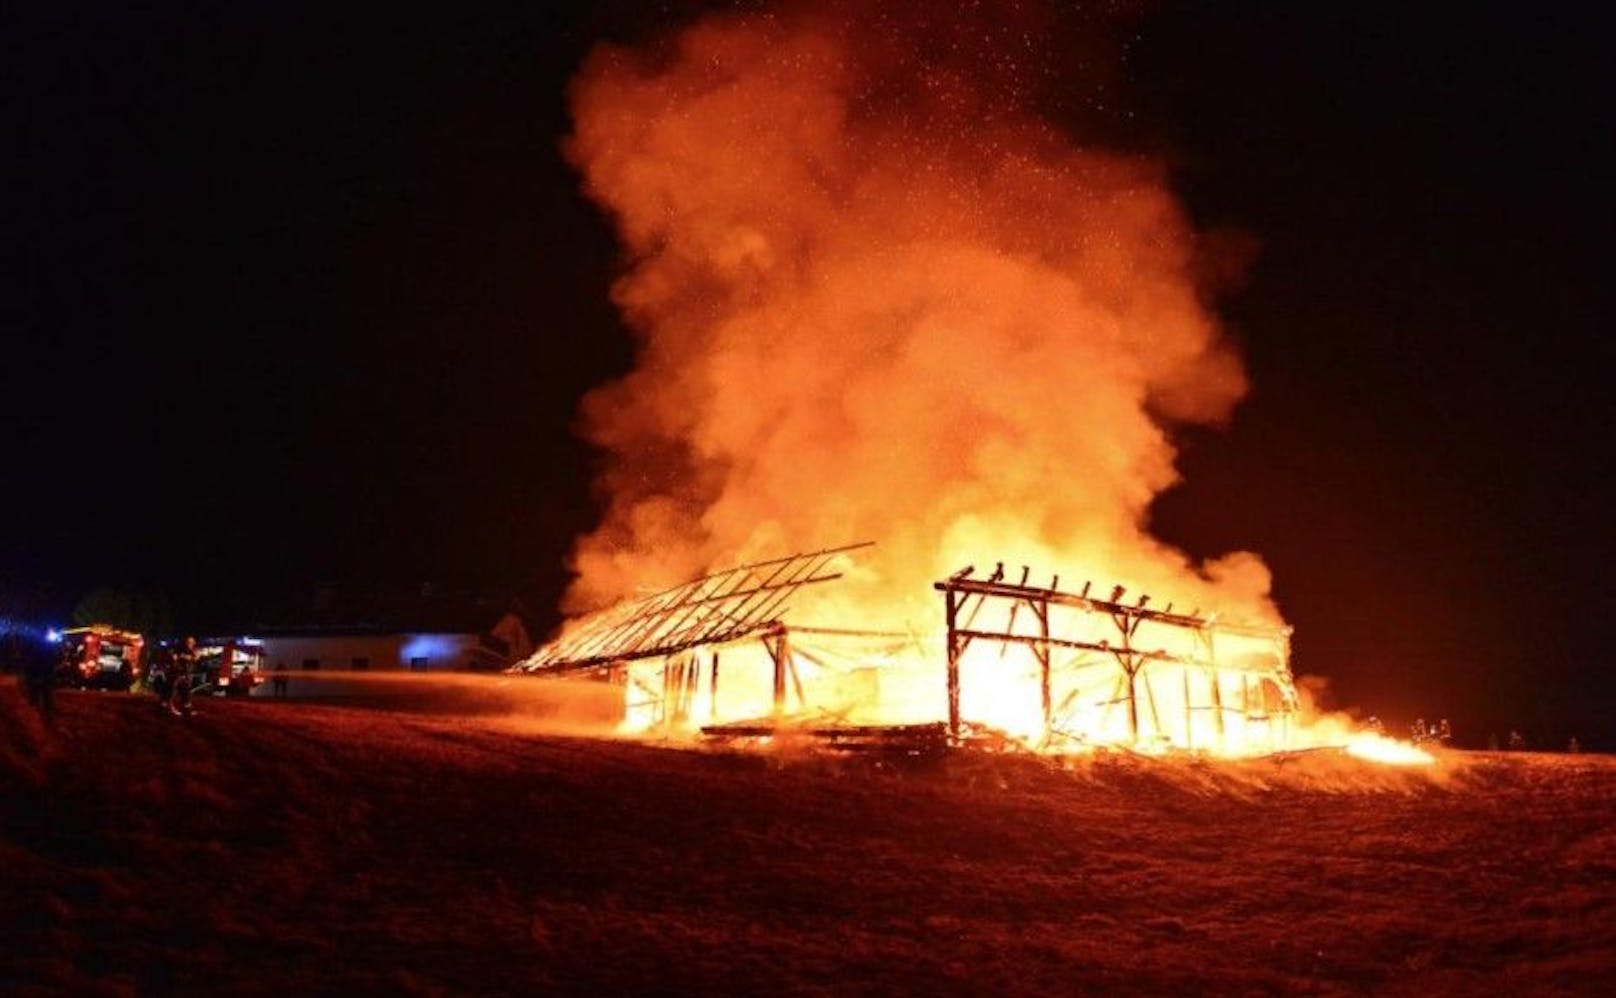 Das Bauernhaus brannte vollkommen nieder.